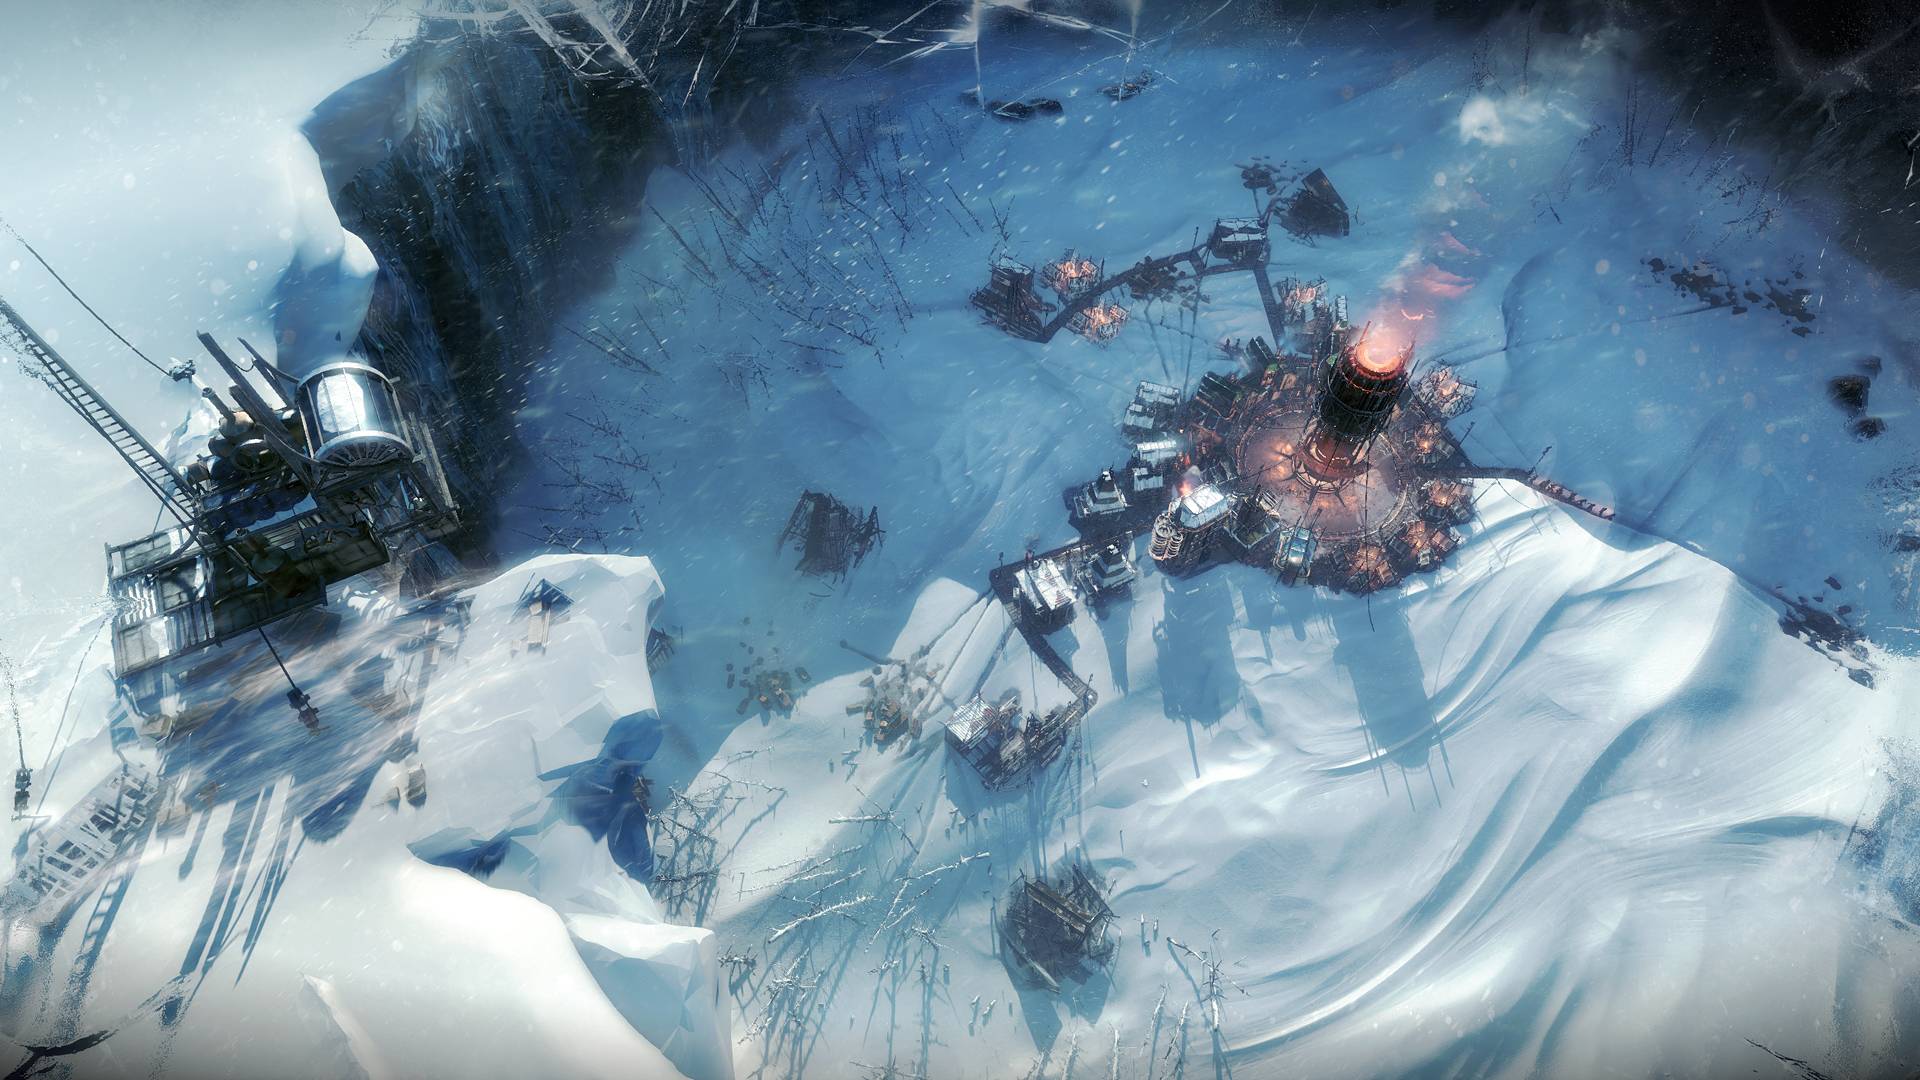 Najlepsze gry budujące miasta: Frostpunk. Zdjęcie pokazuje osadę przemysłową w zaśnieżonym krajobrazie